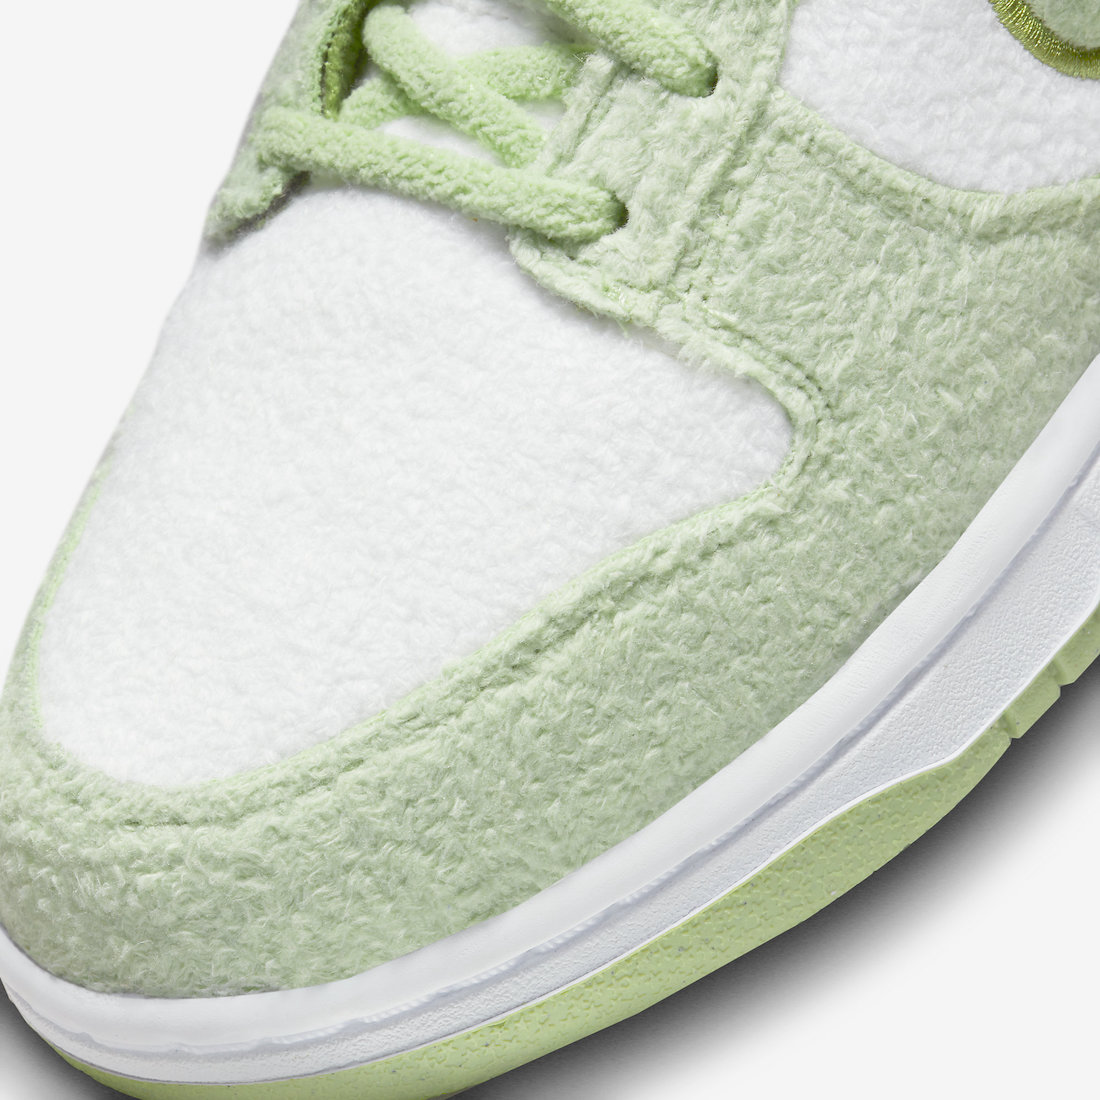 Nike Dunk Low Fleece Green DQ7579-300 Release Date Info